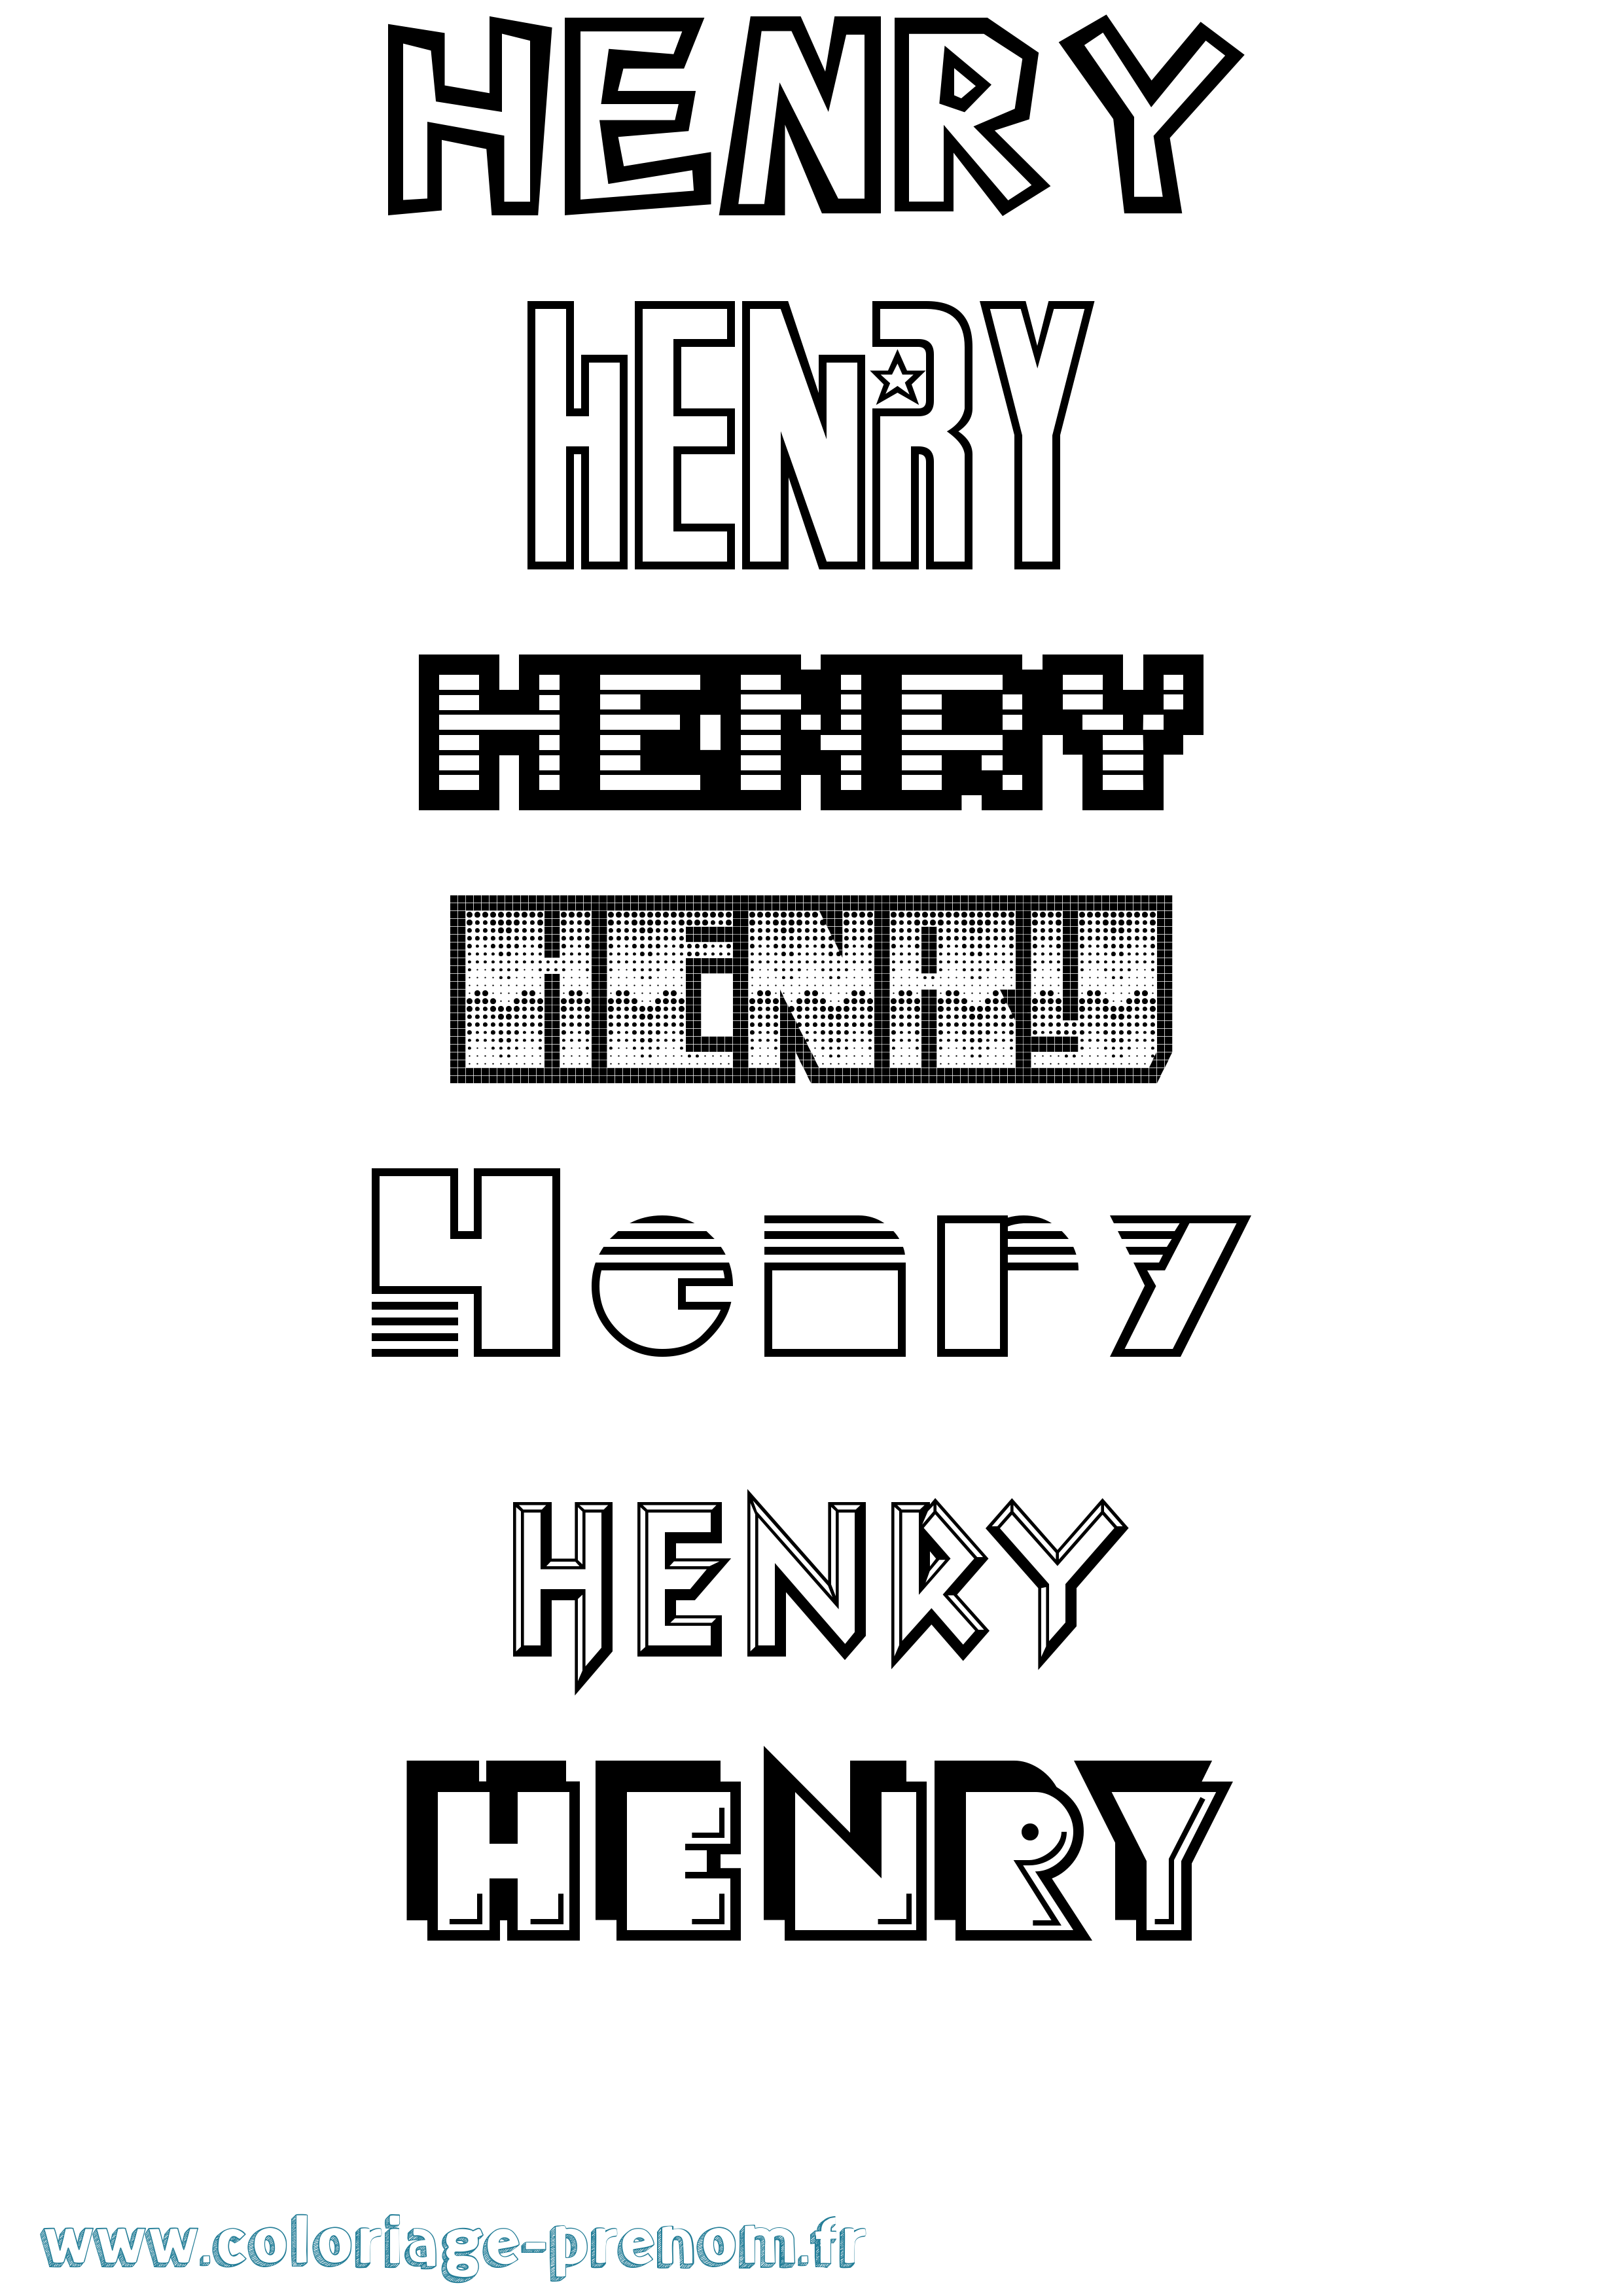 Coloriage prénom Henry Jeux Vidéos